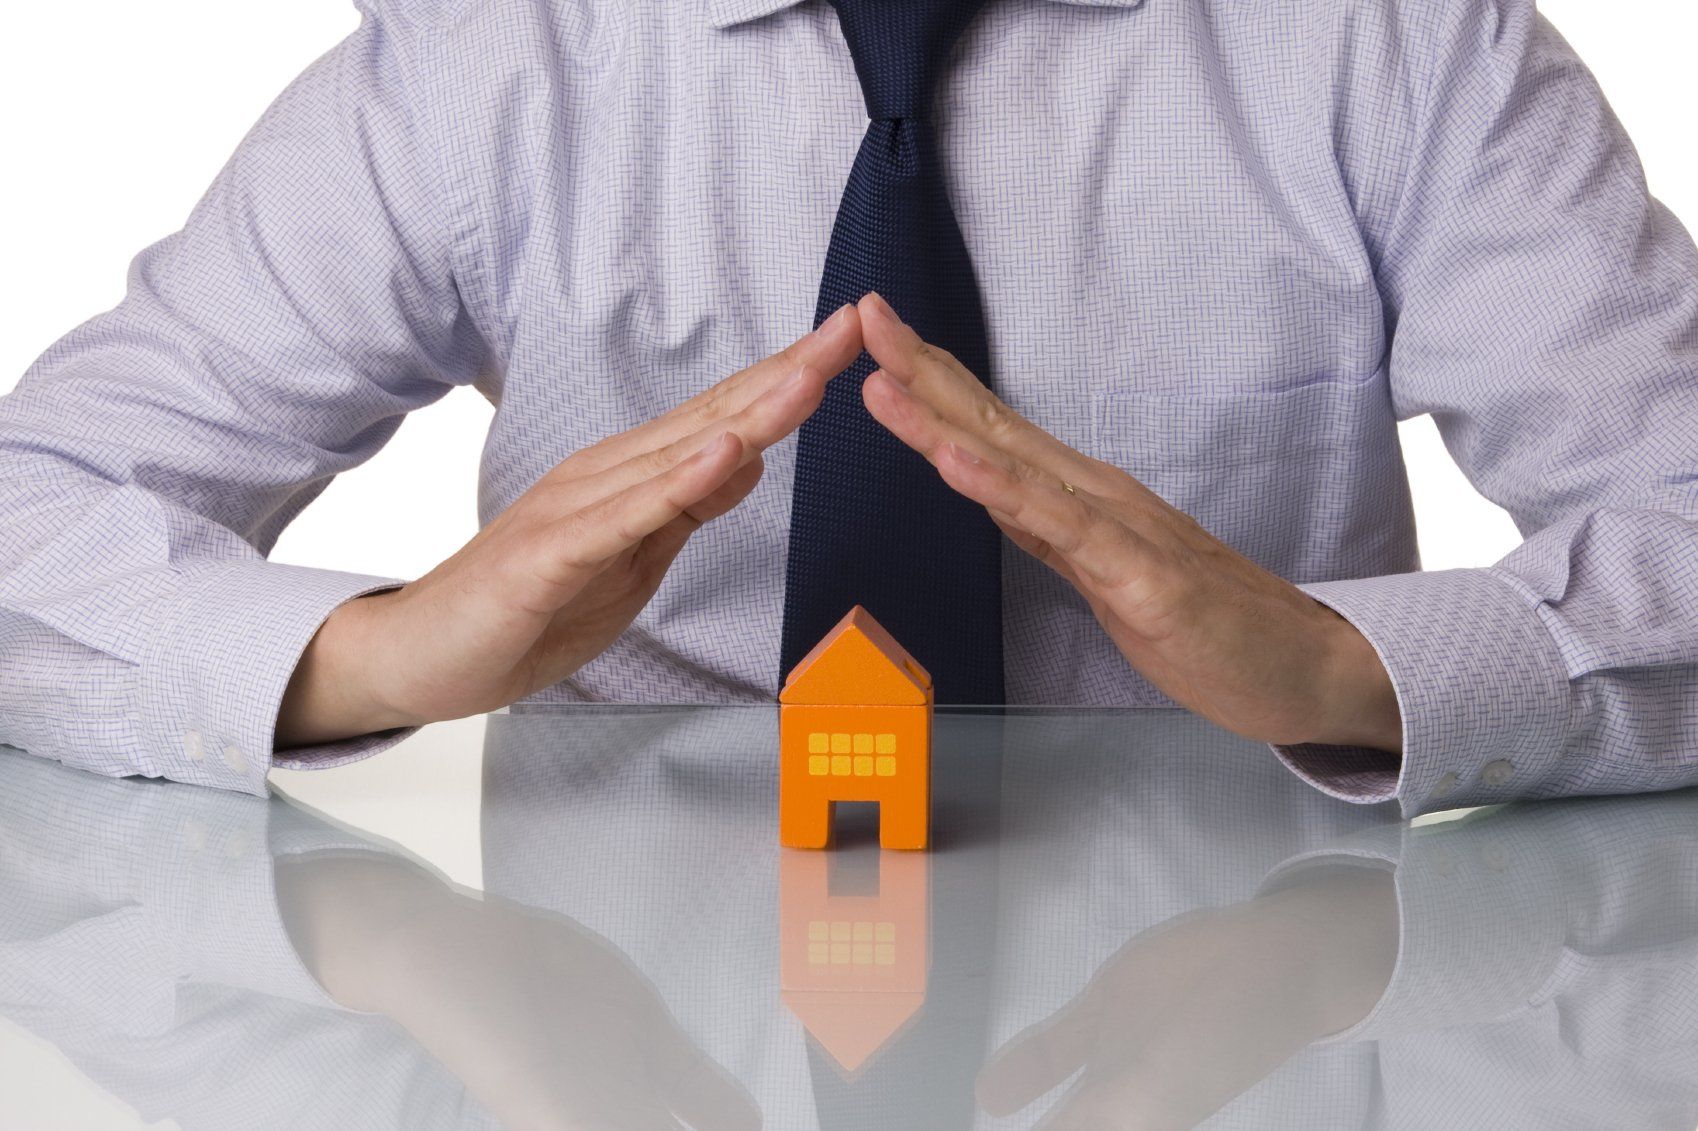  Immobilie vermieten: Tipps für private Vermieter